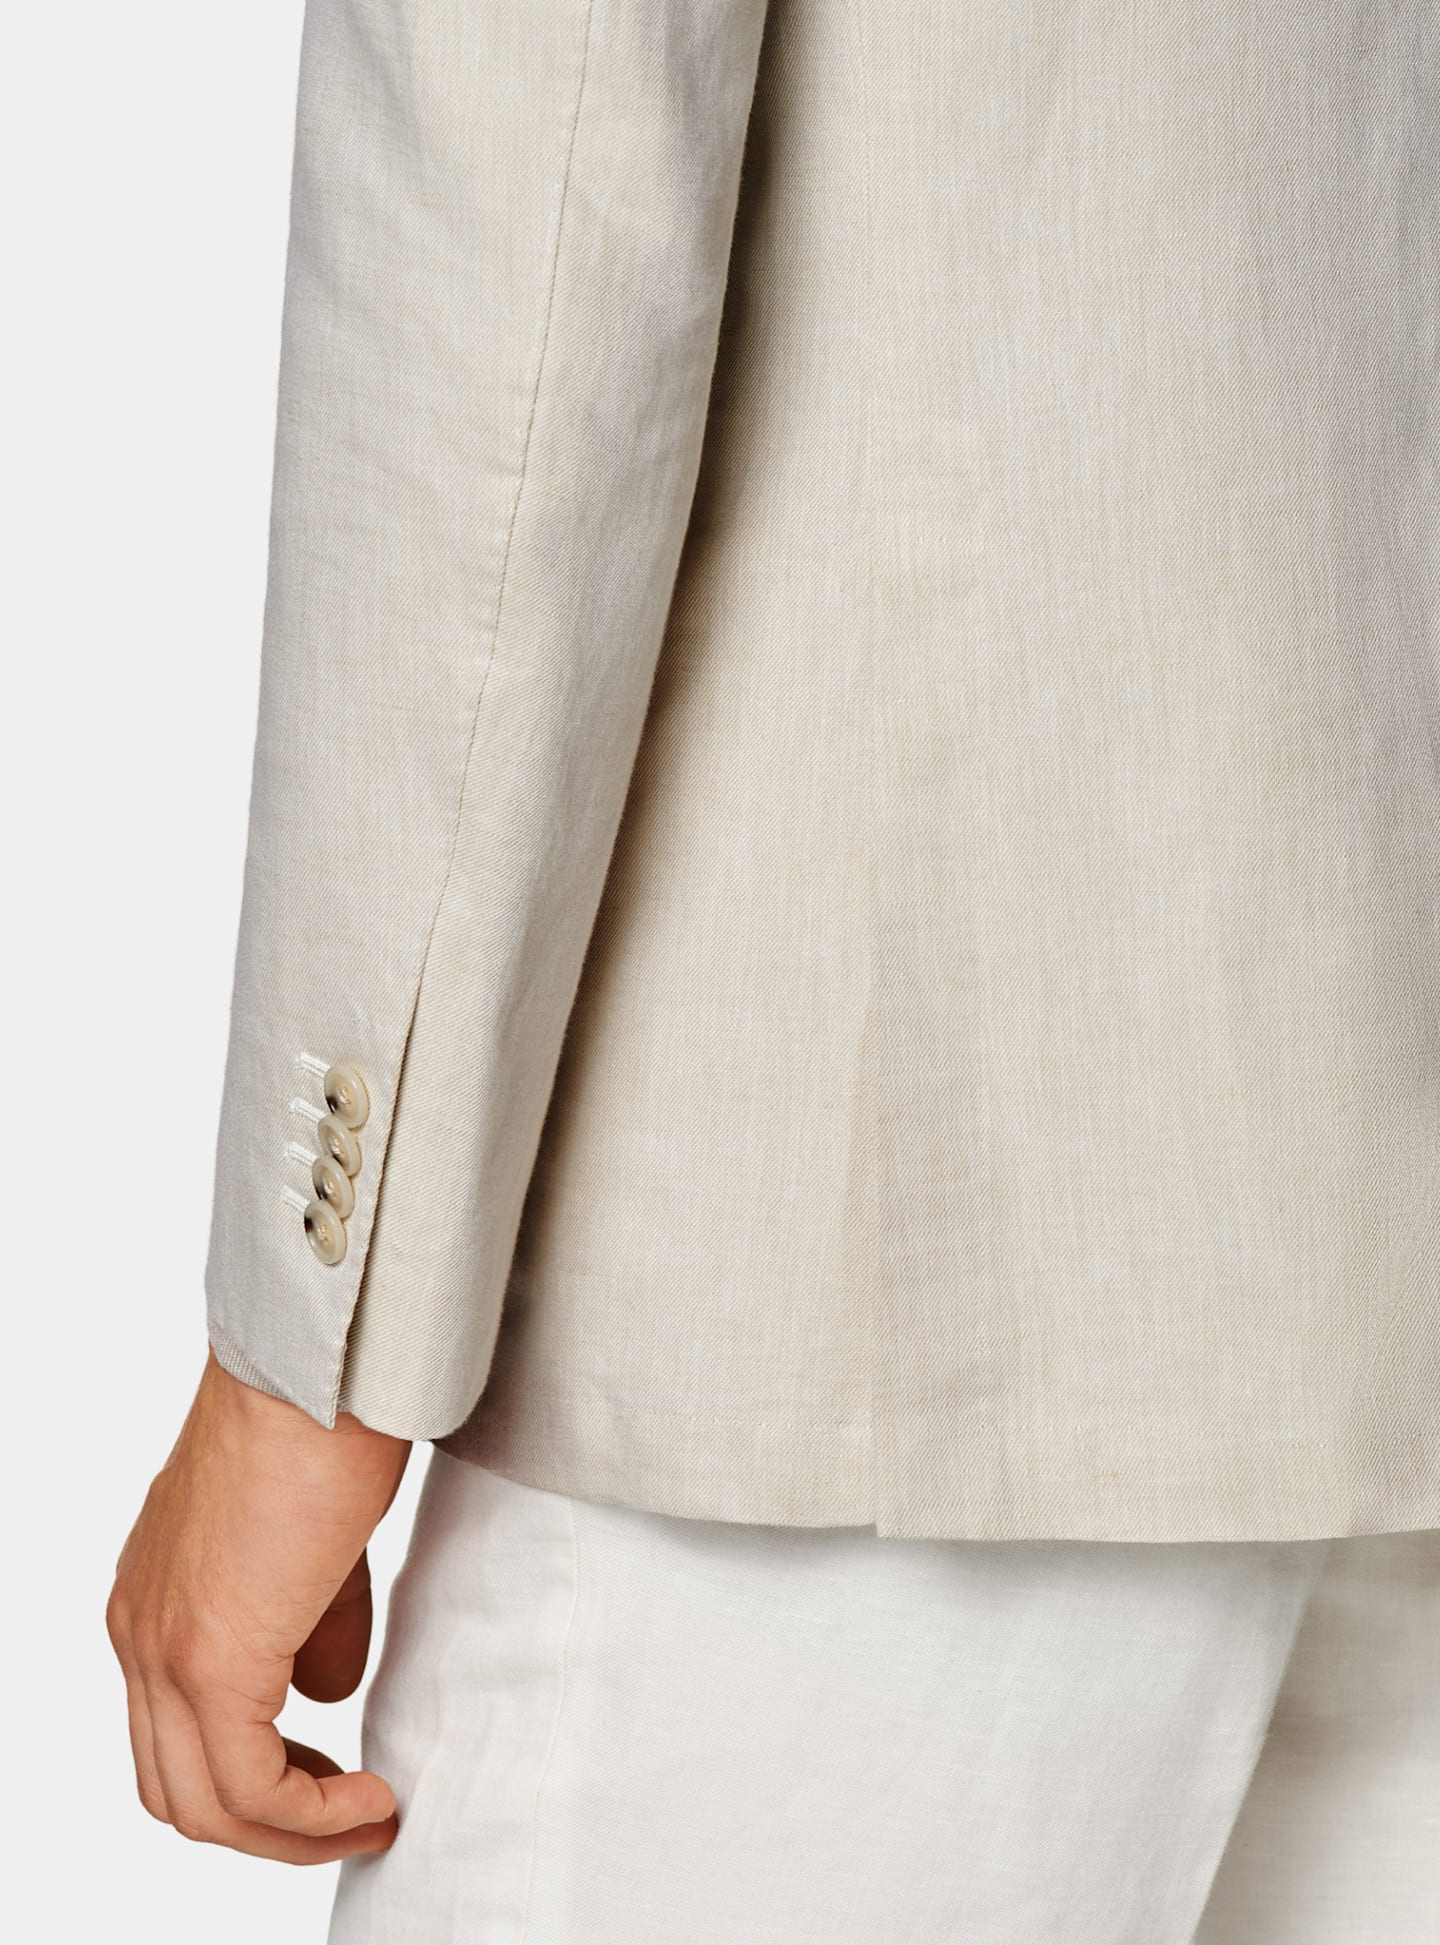 Dettaglio di una giacca marrone chiaro e camicia color taupe.